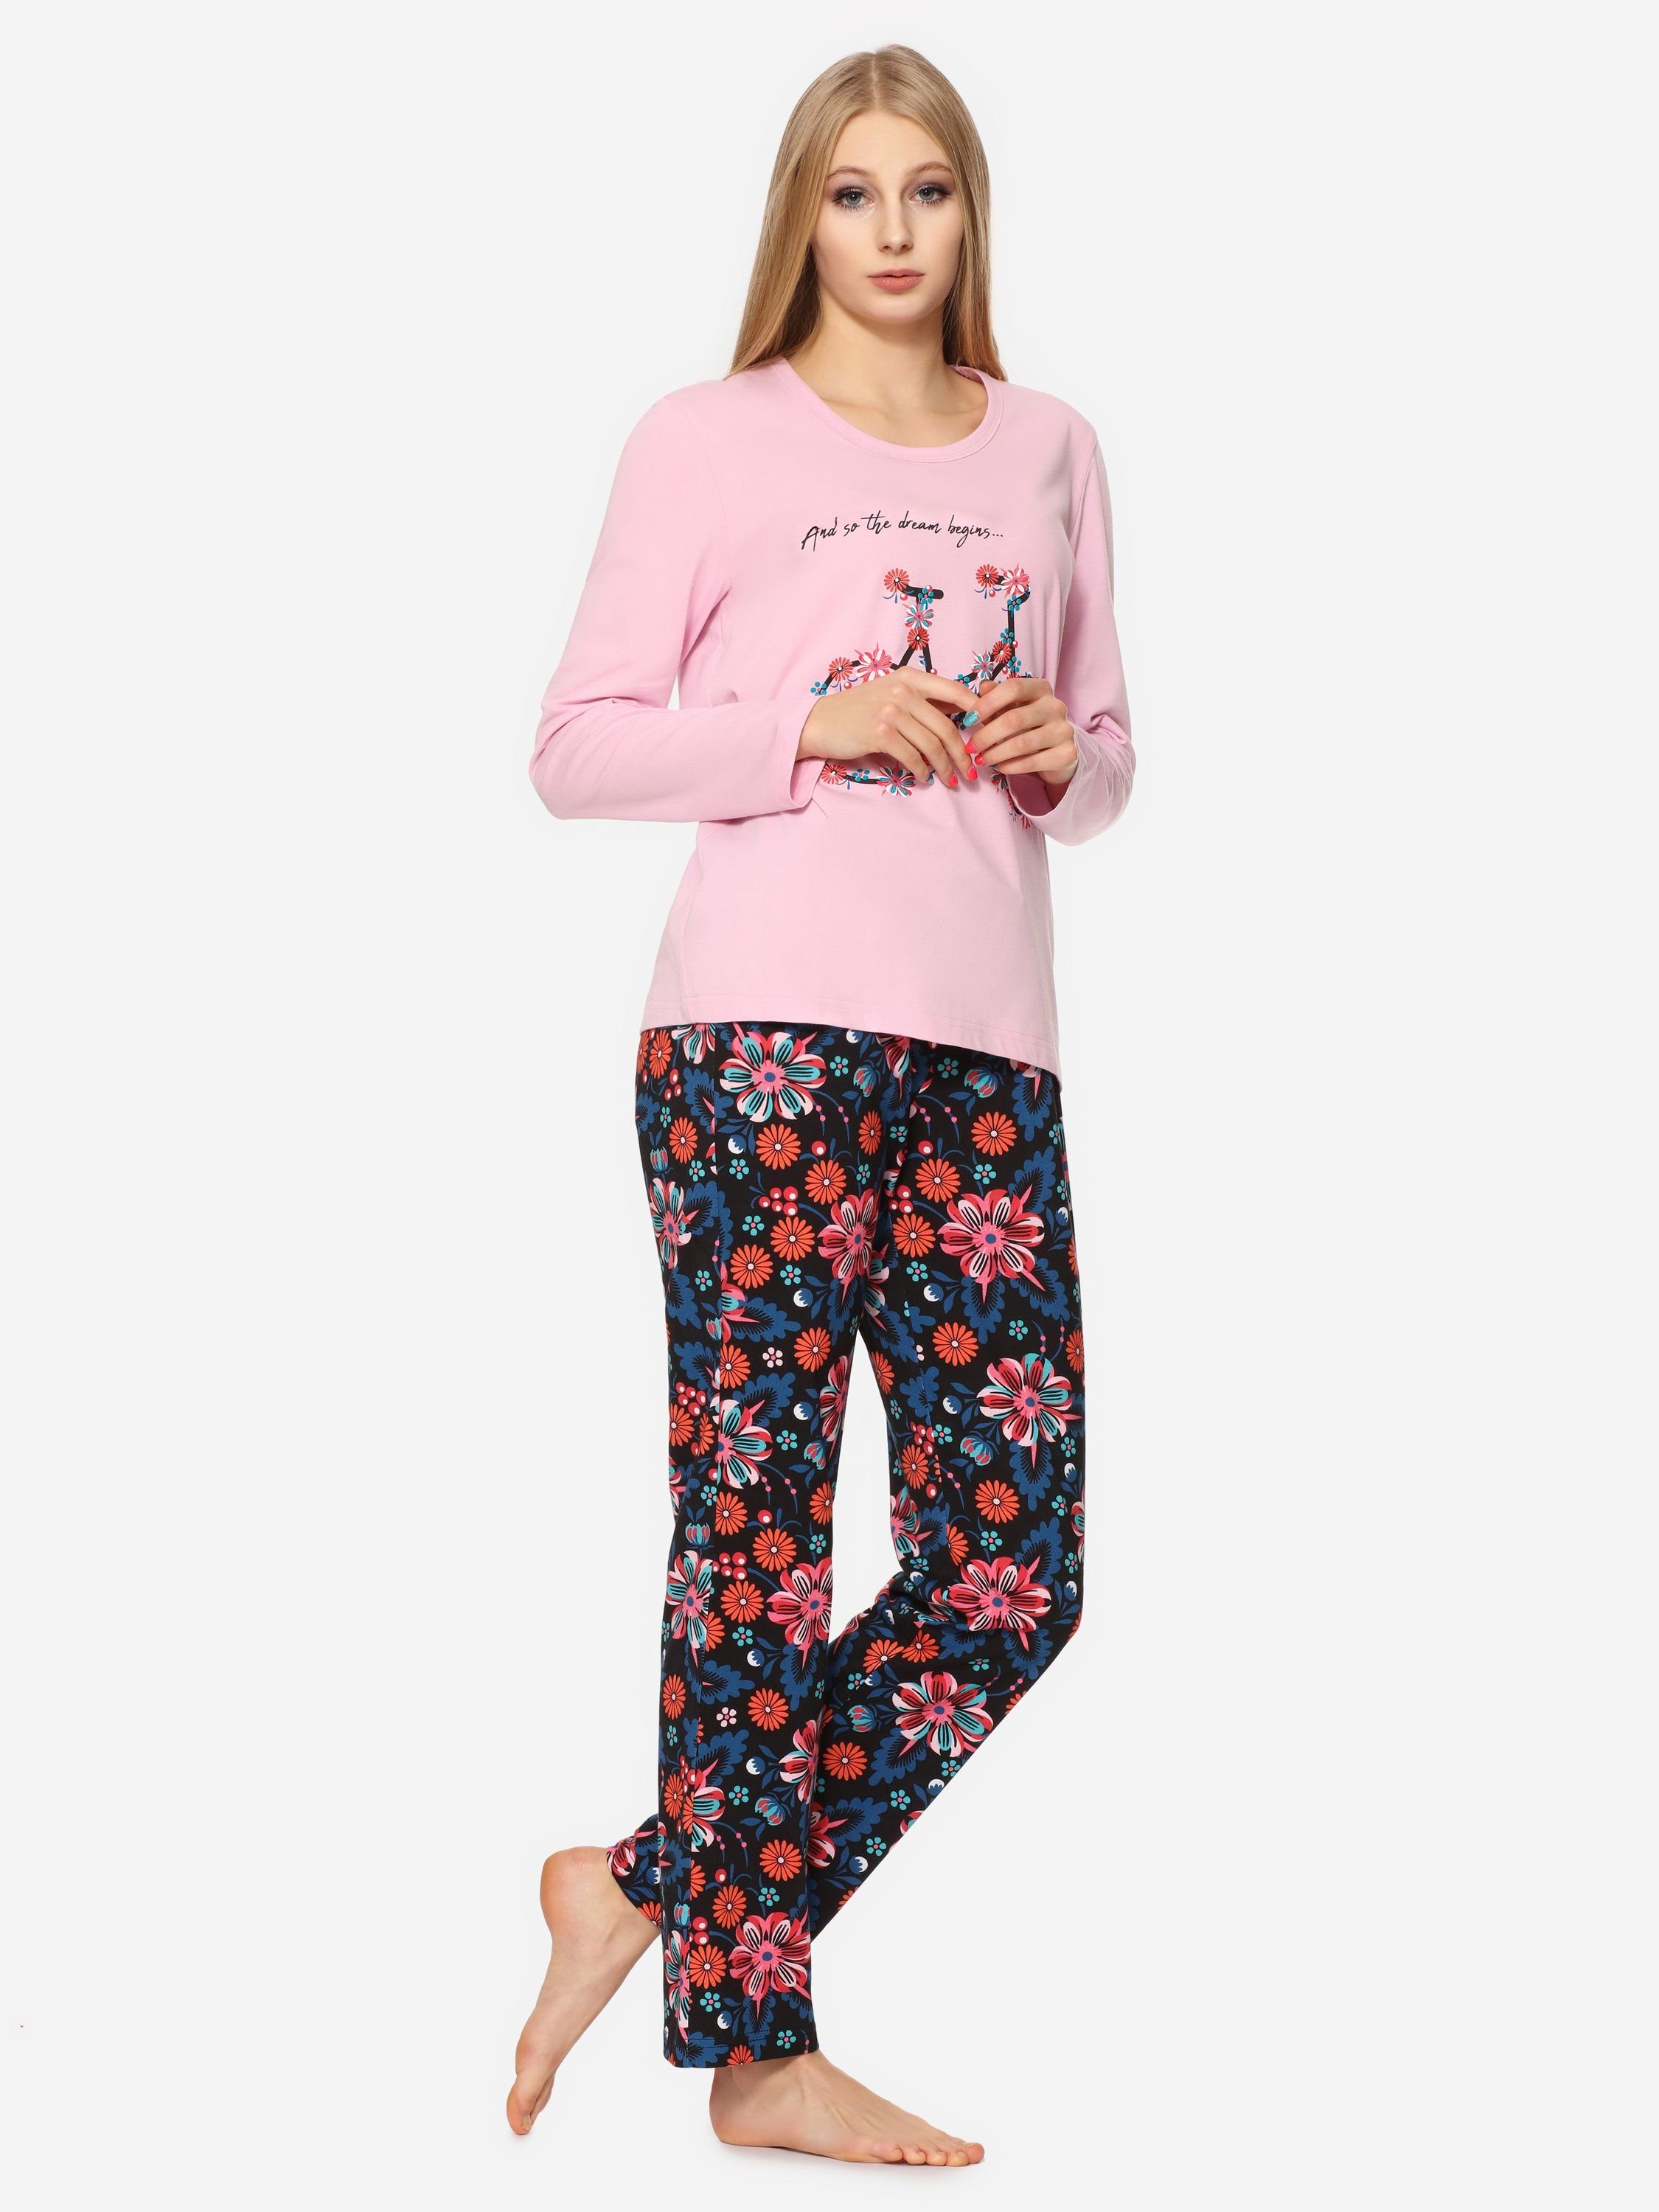 MS10-169 Damen Schlafanzug Licht Schlafanzug Merry Rosa/Blumen2 Style